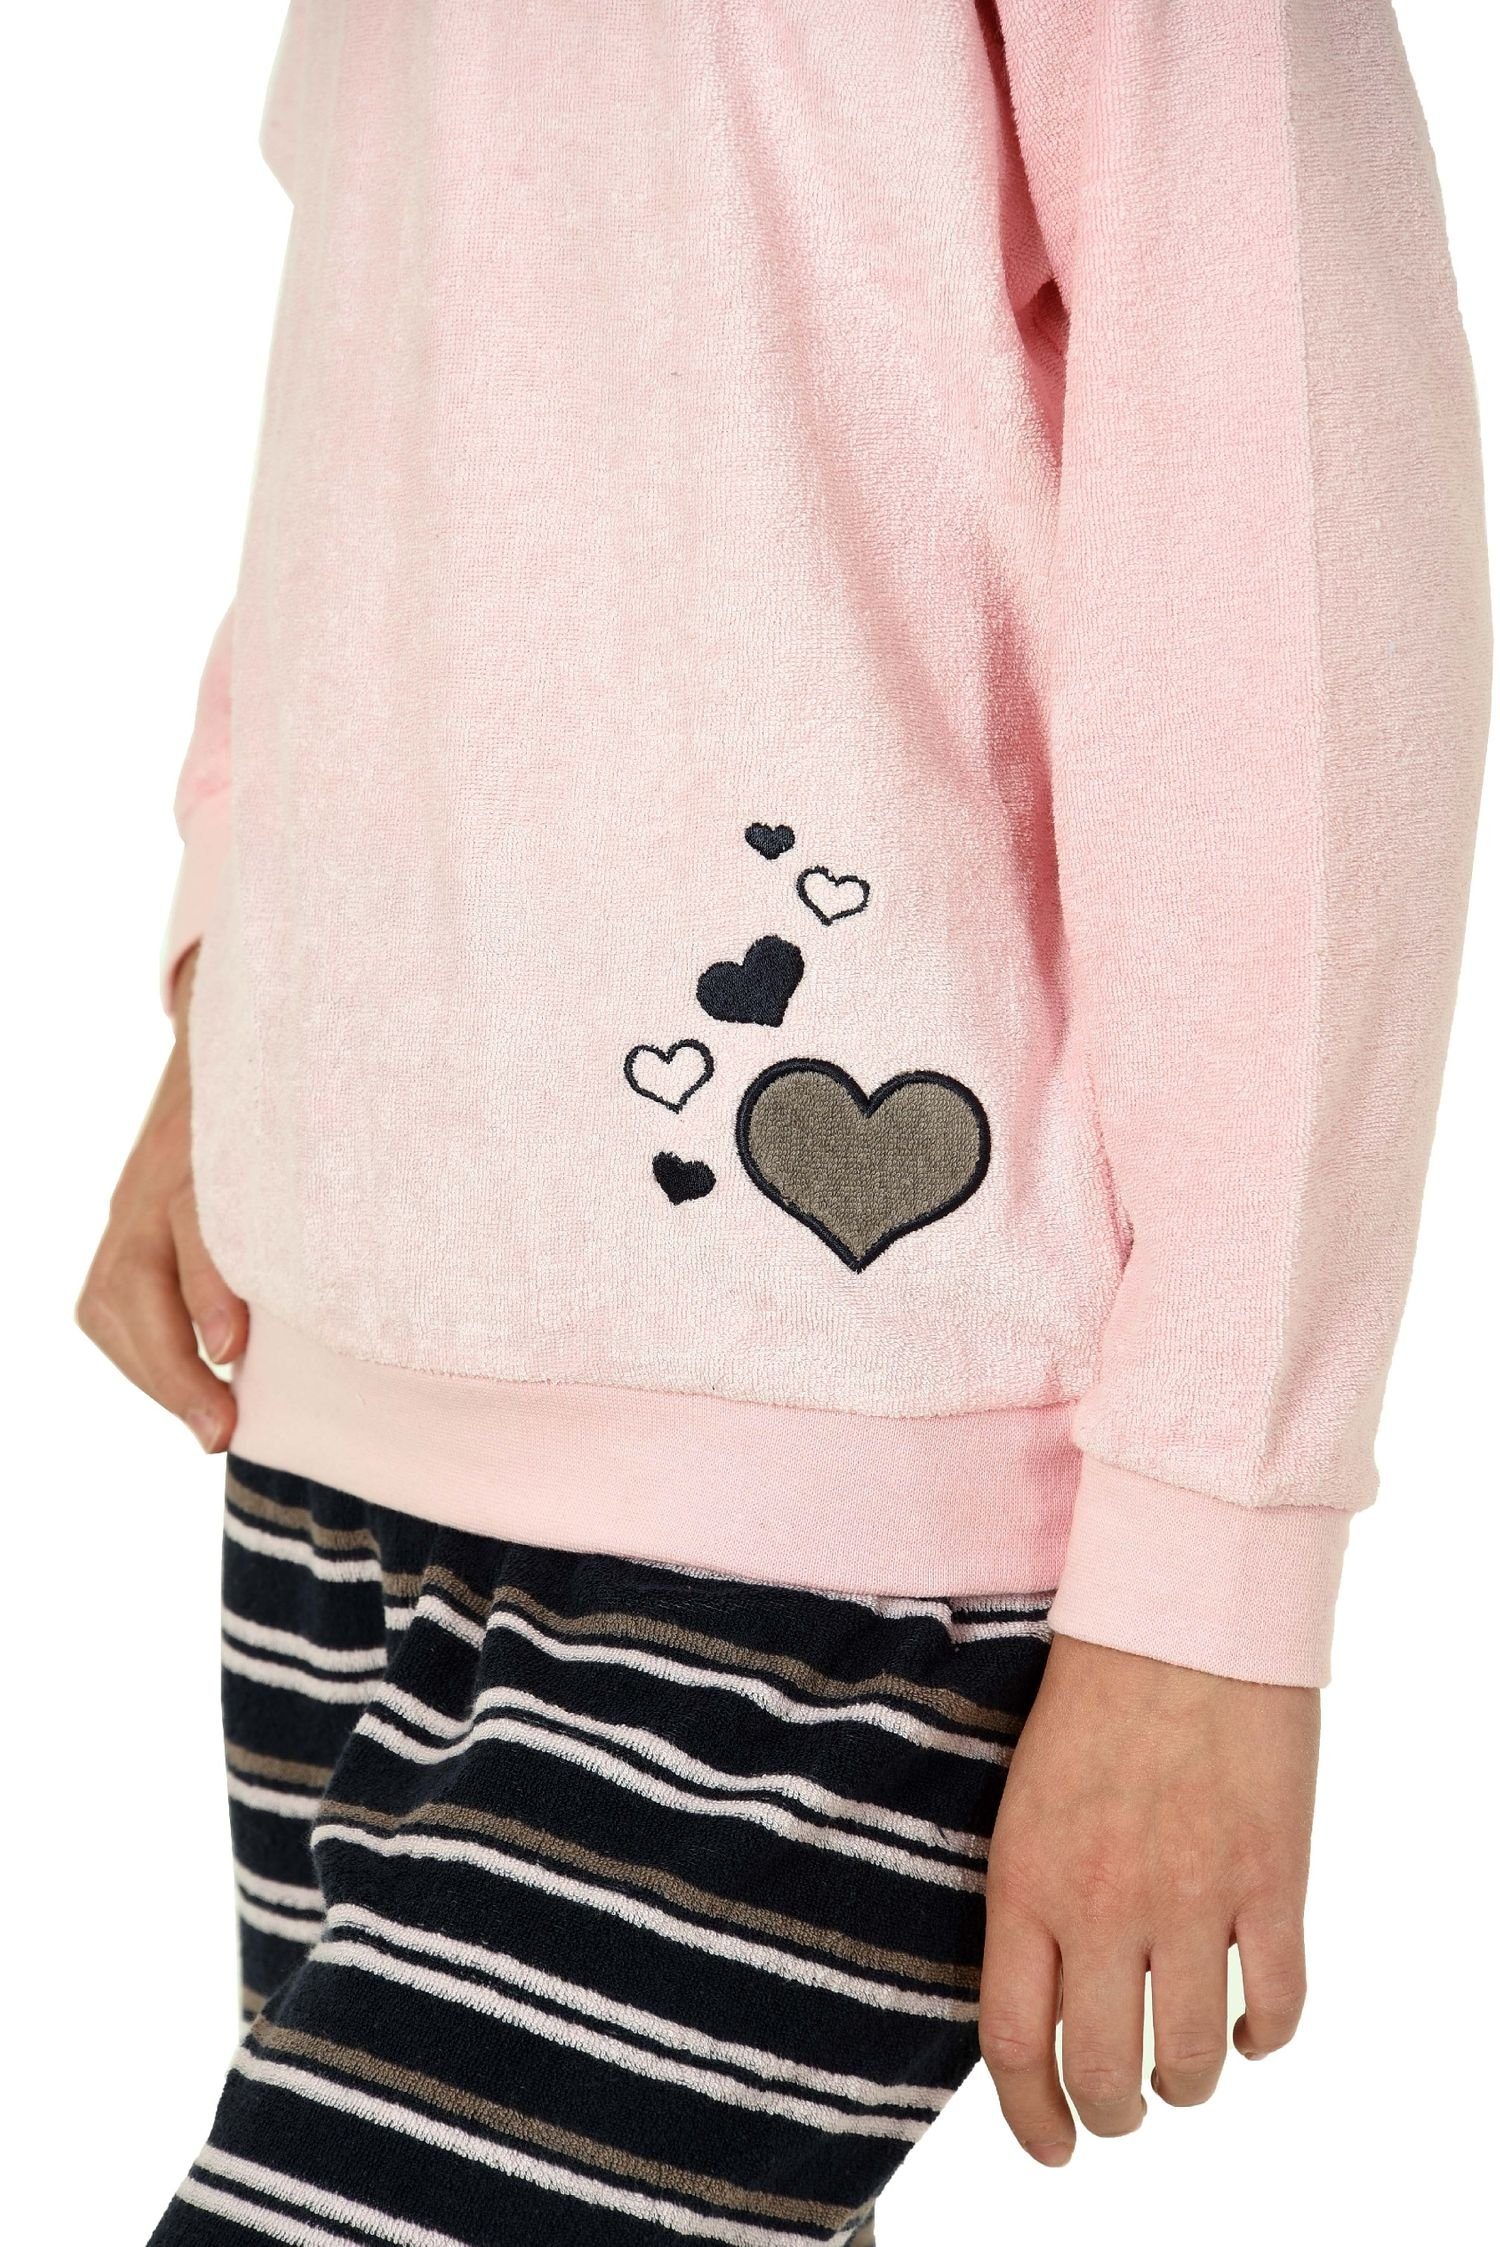 Schlafanzug Frottee Normann Pyjama Pyjama Bündchen mit Herz rosa Mädchen Motiv lang mit